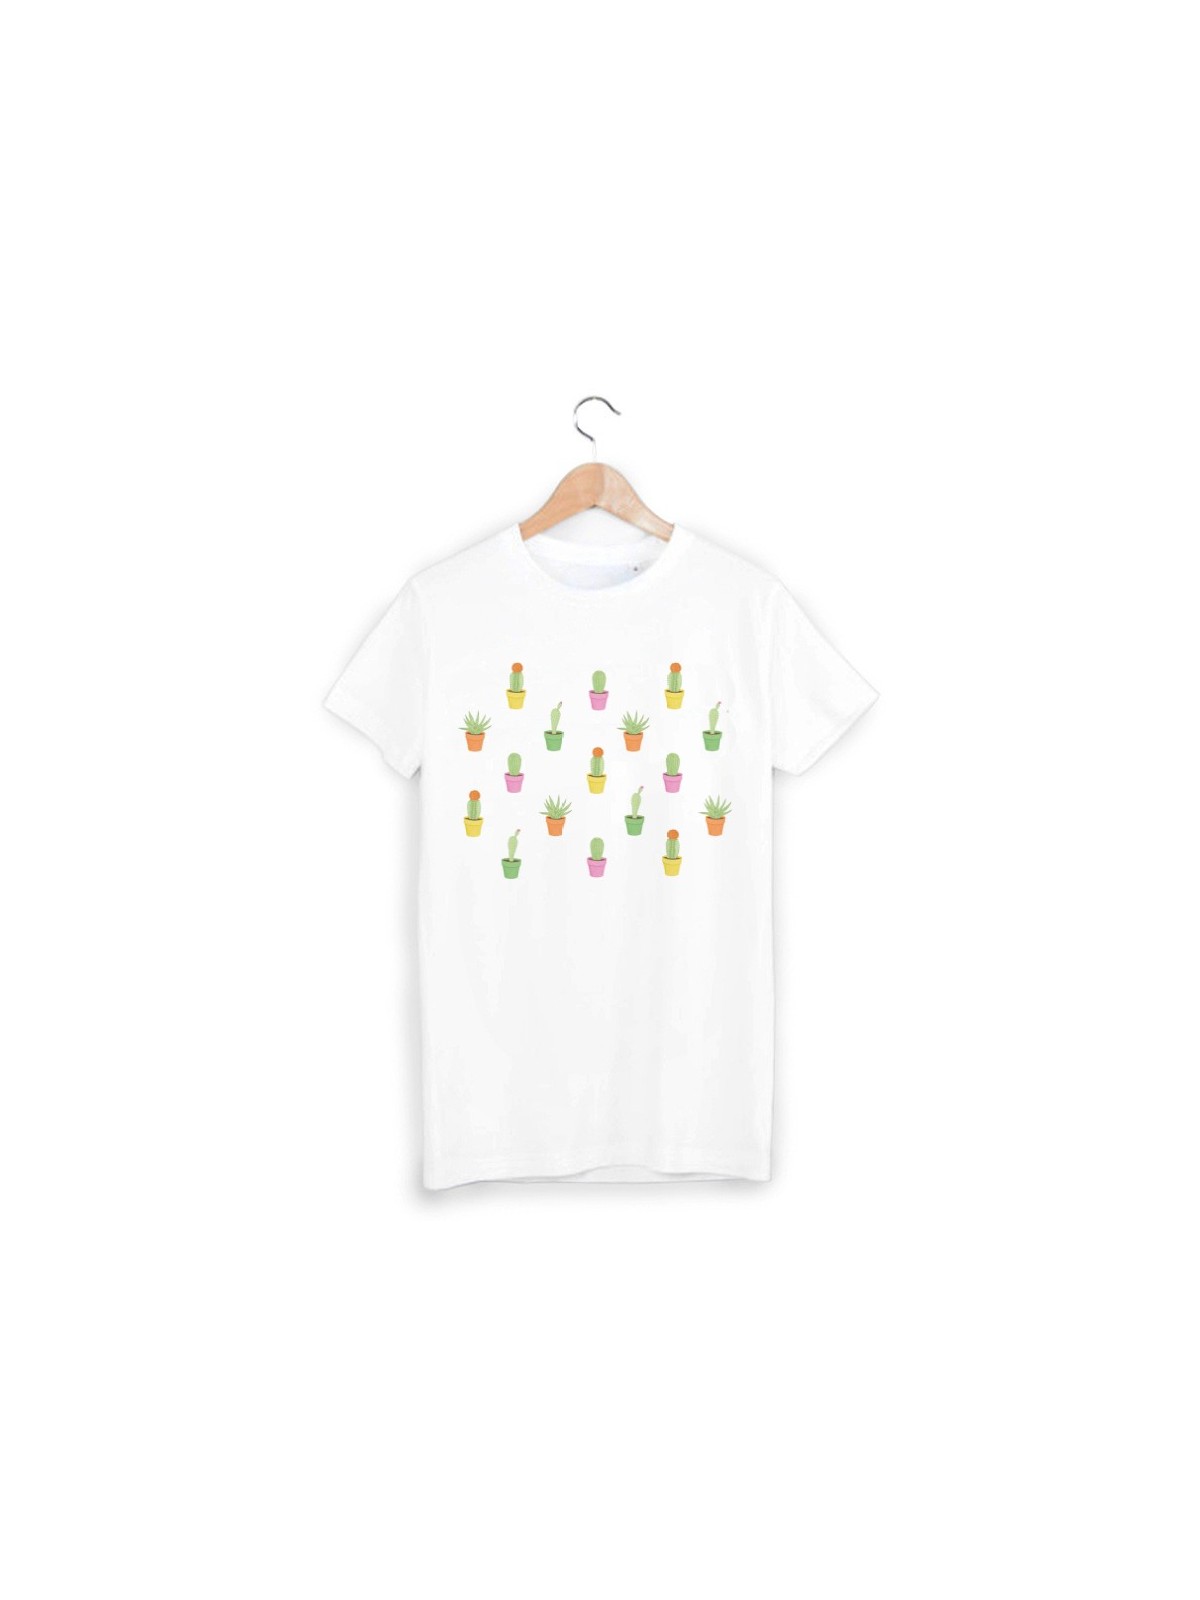 T-Shirt cactus ref 870